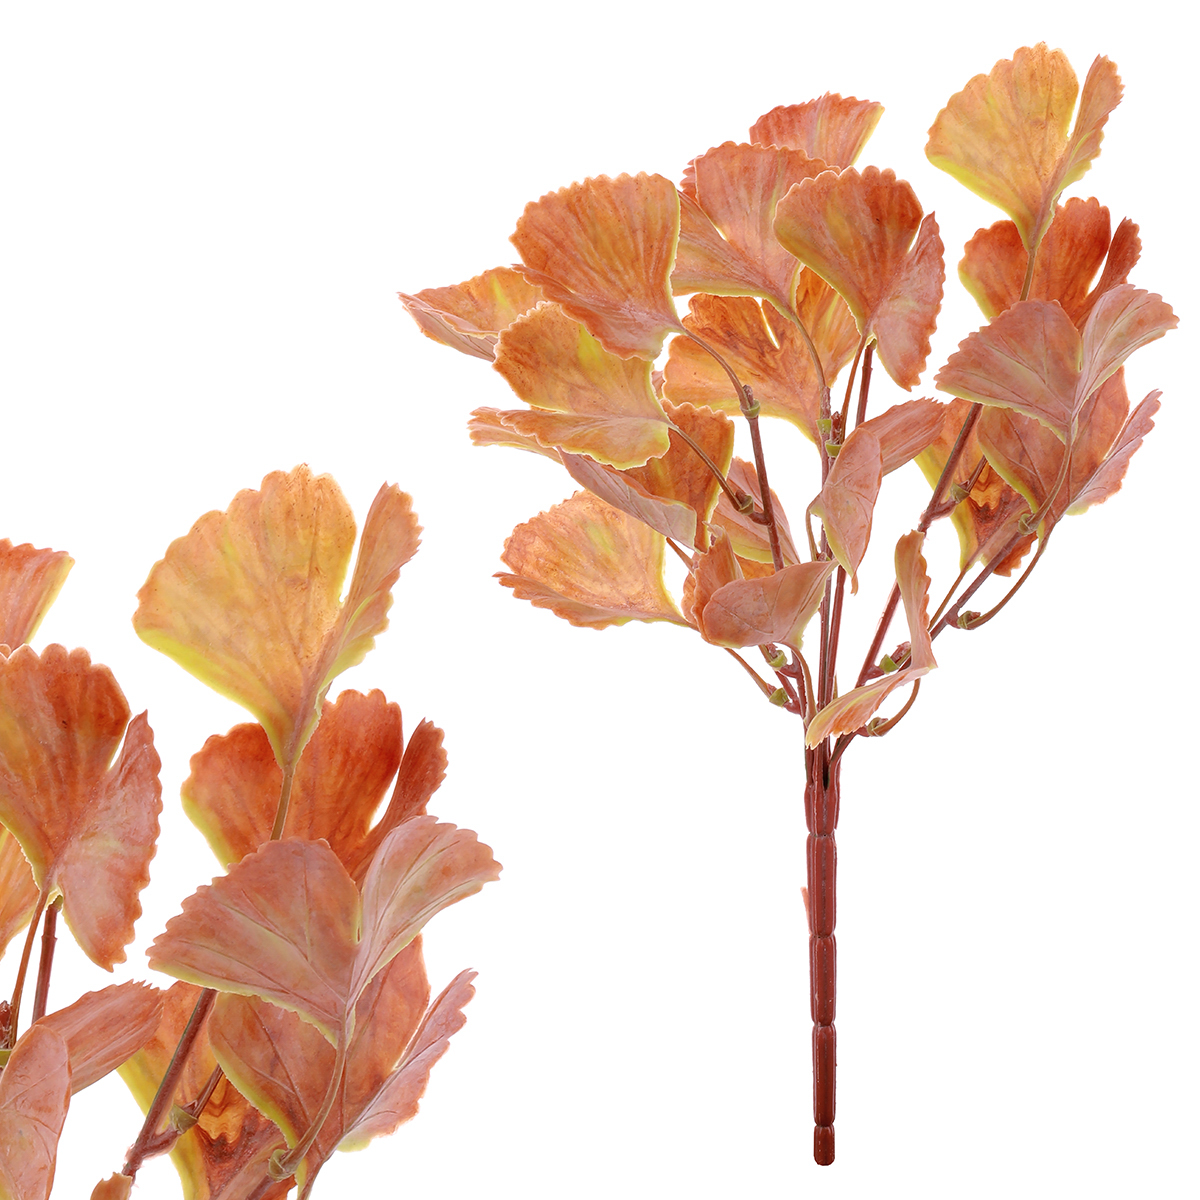 Ginkgo biloba, puget, umělá květina, podzimní hnědá barva.